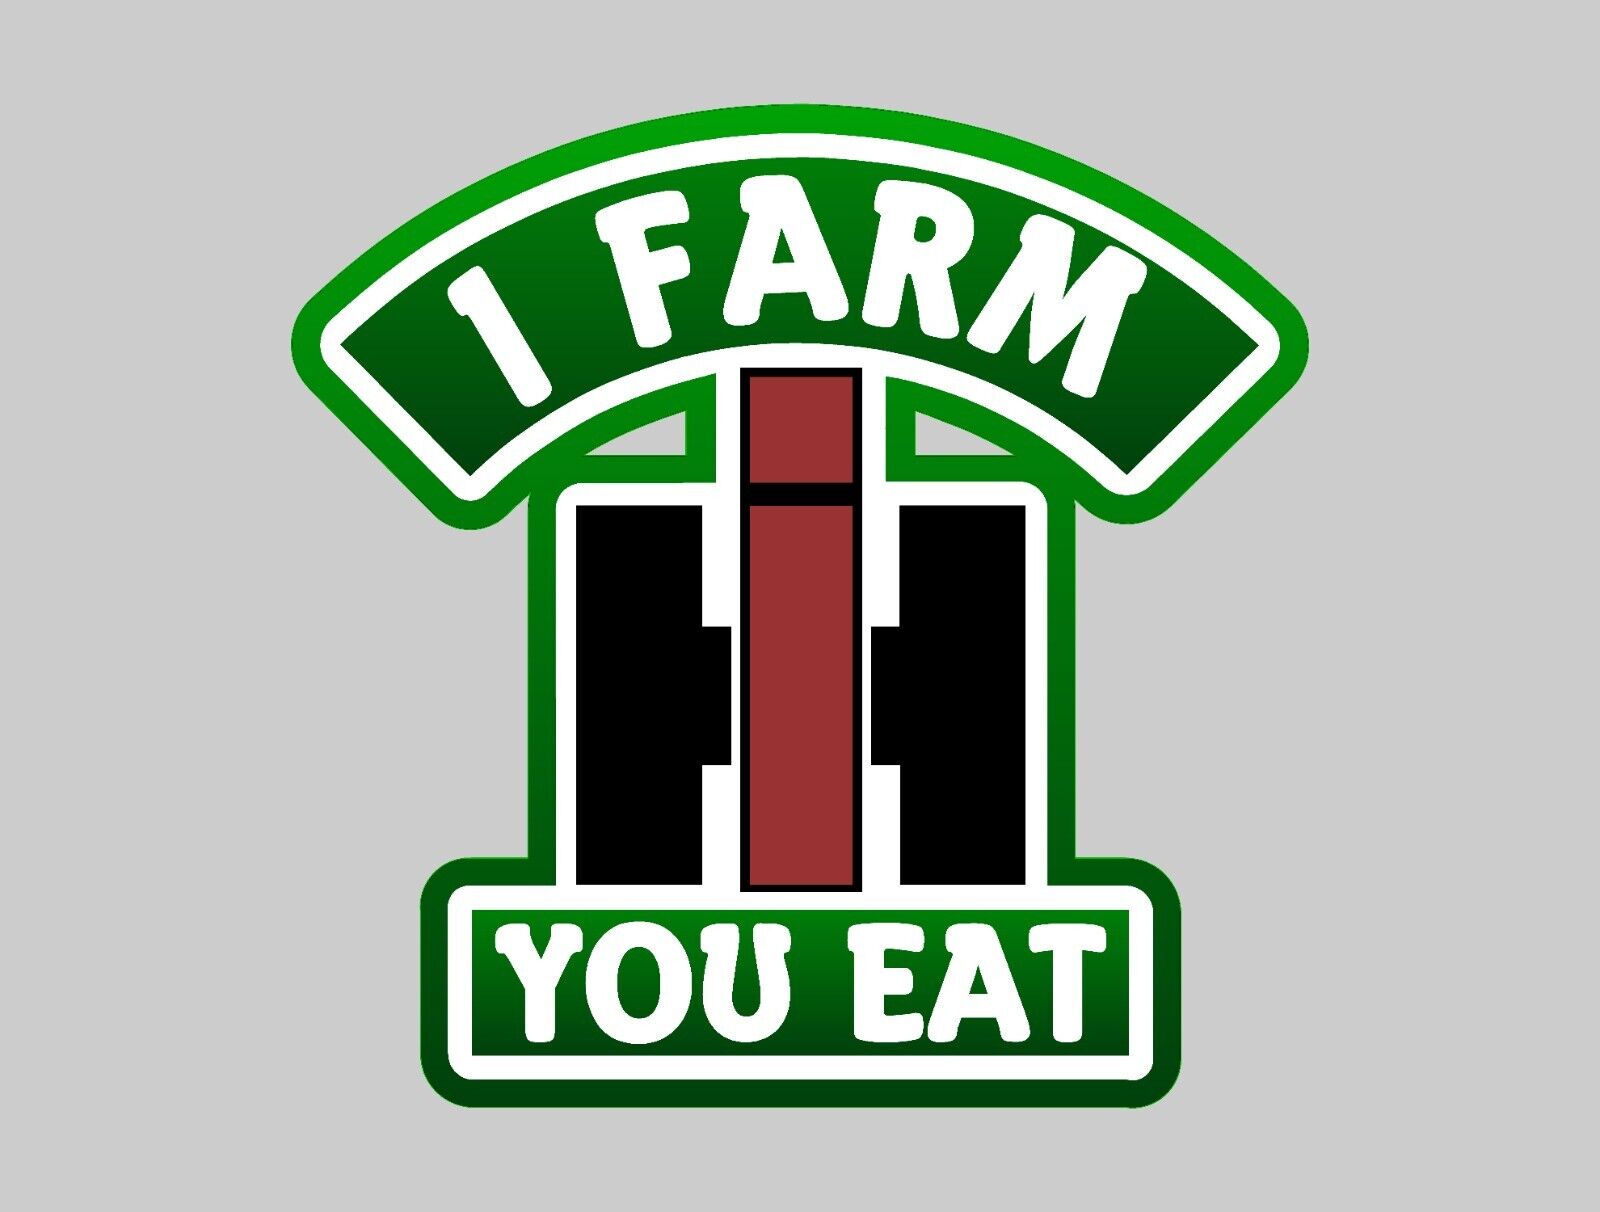 International Harvester Vintage - I Farm You Eat - Sticker Decal Emblem